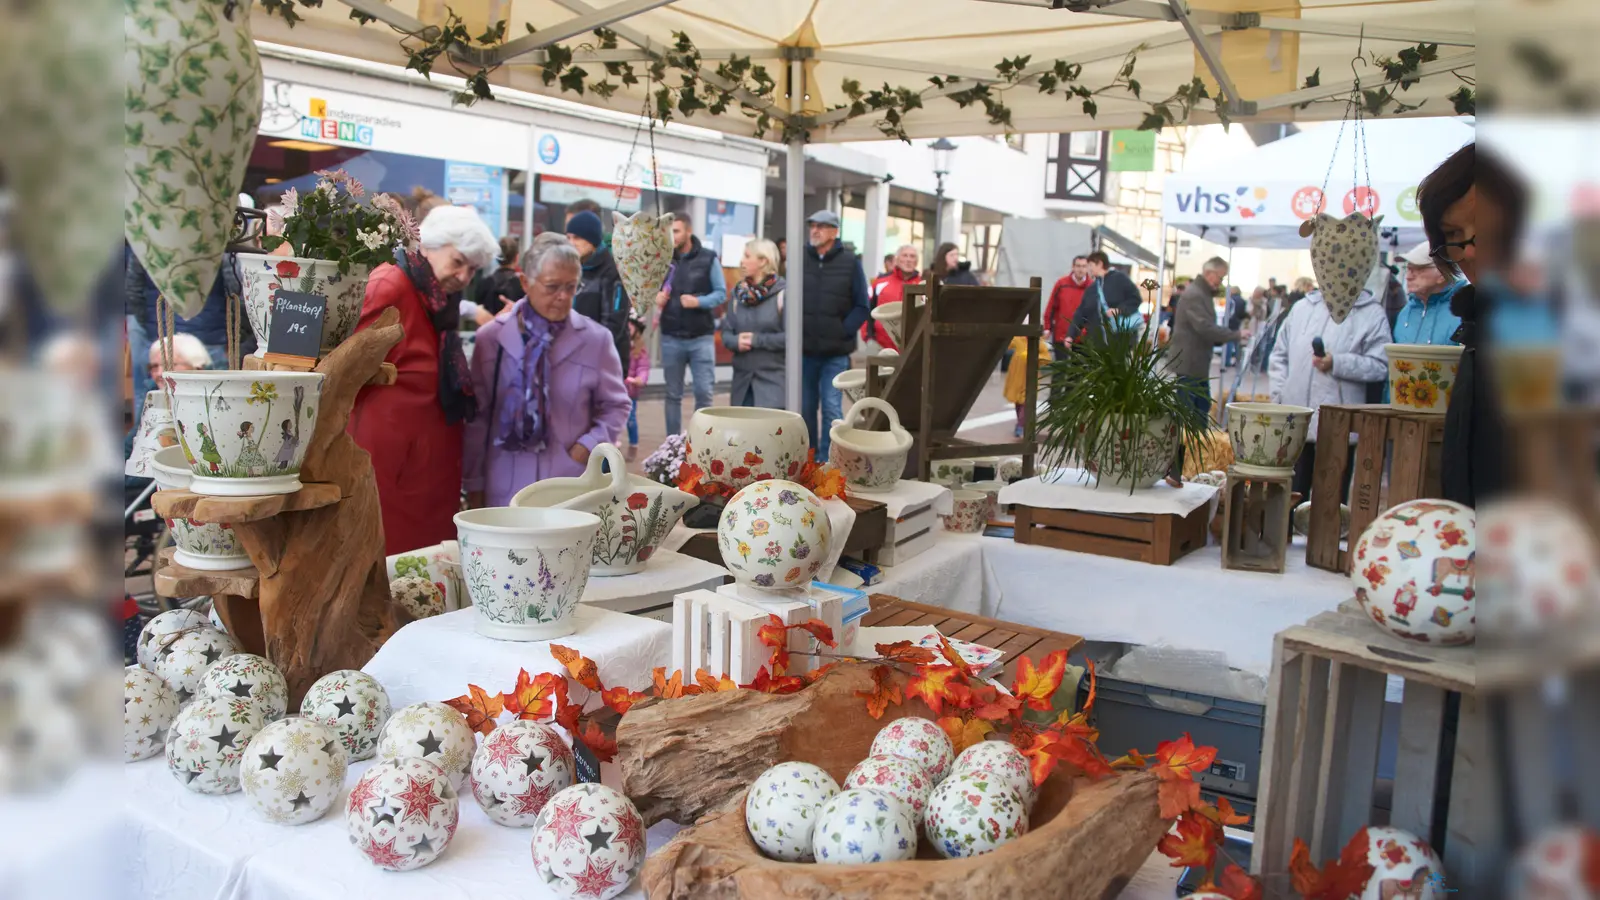 An über 30 Marktständen fanden die Besuchern des Herbstmarktes ein herbstliche geprägtes Angebot an Kunsthandwerk, Leckereien, Information und saisonalen Artikeln. (Foto: Stefan Bönning)